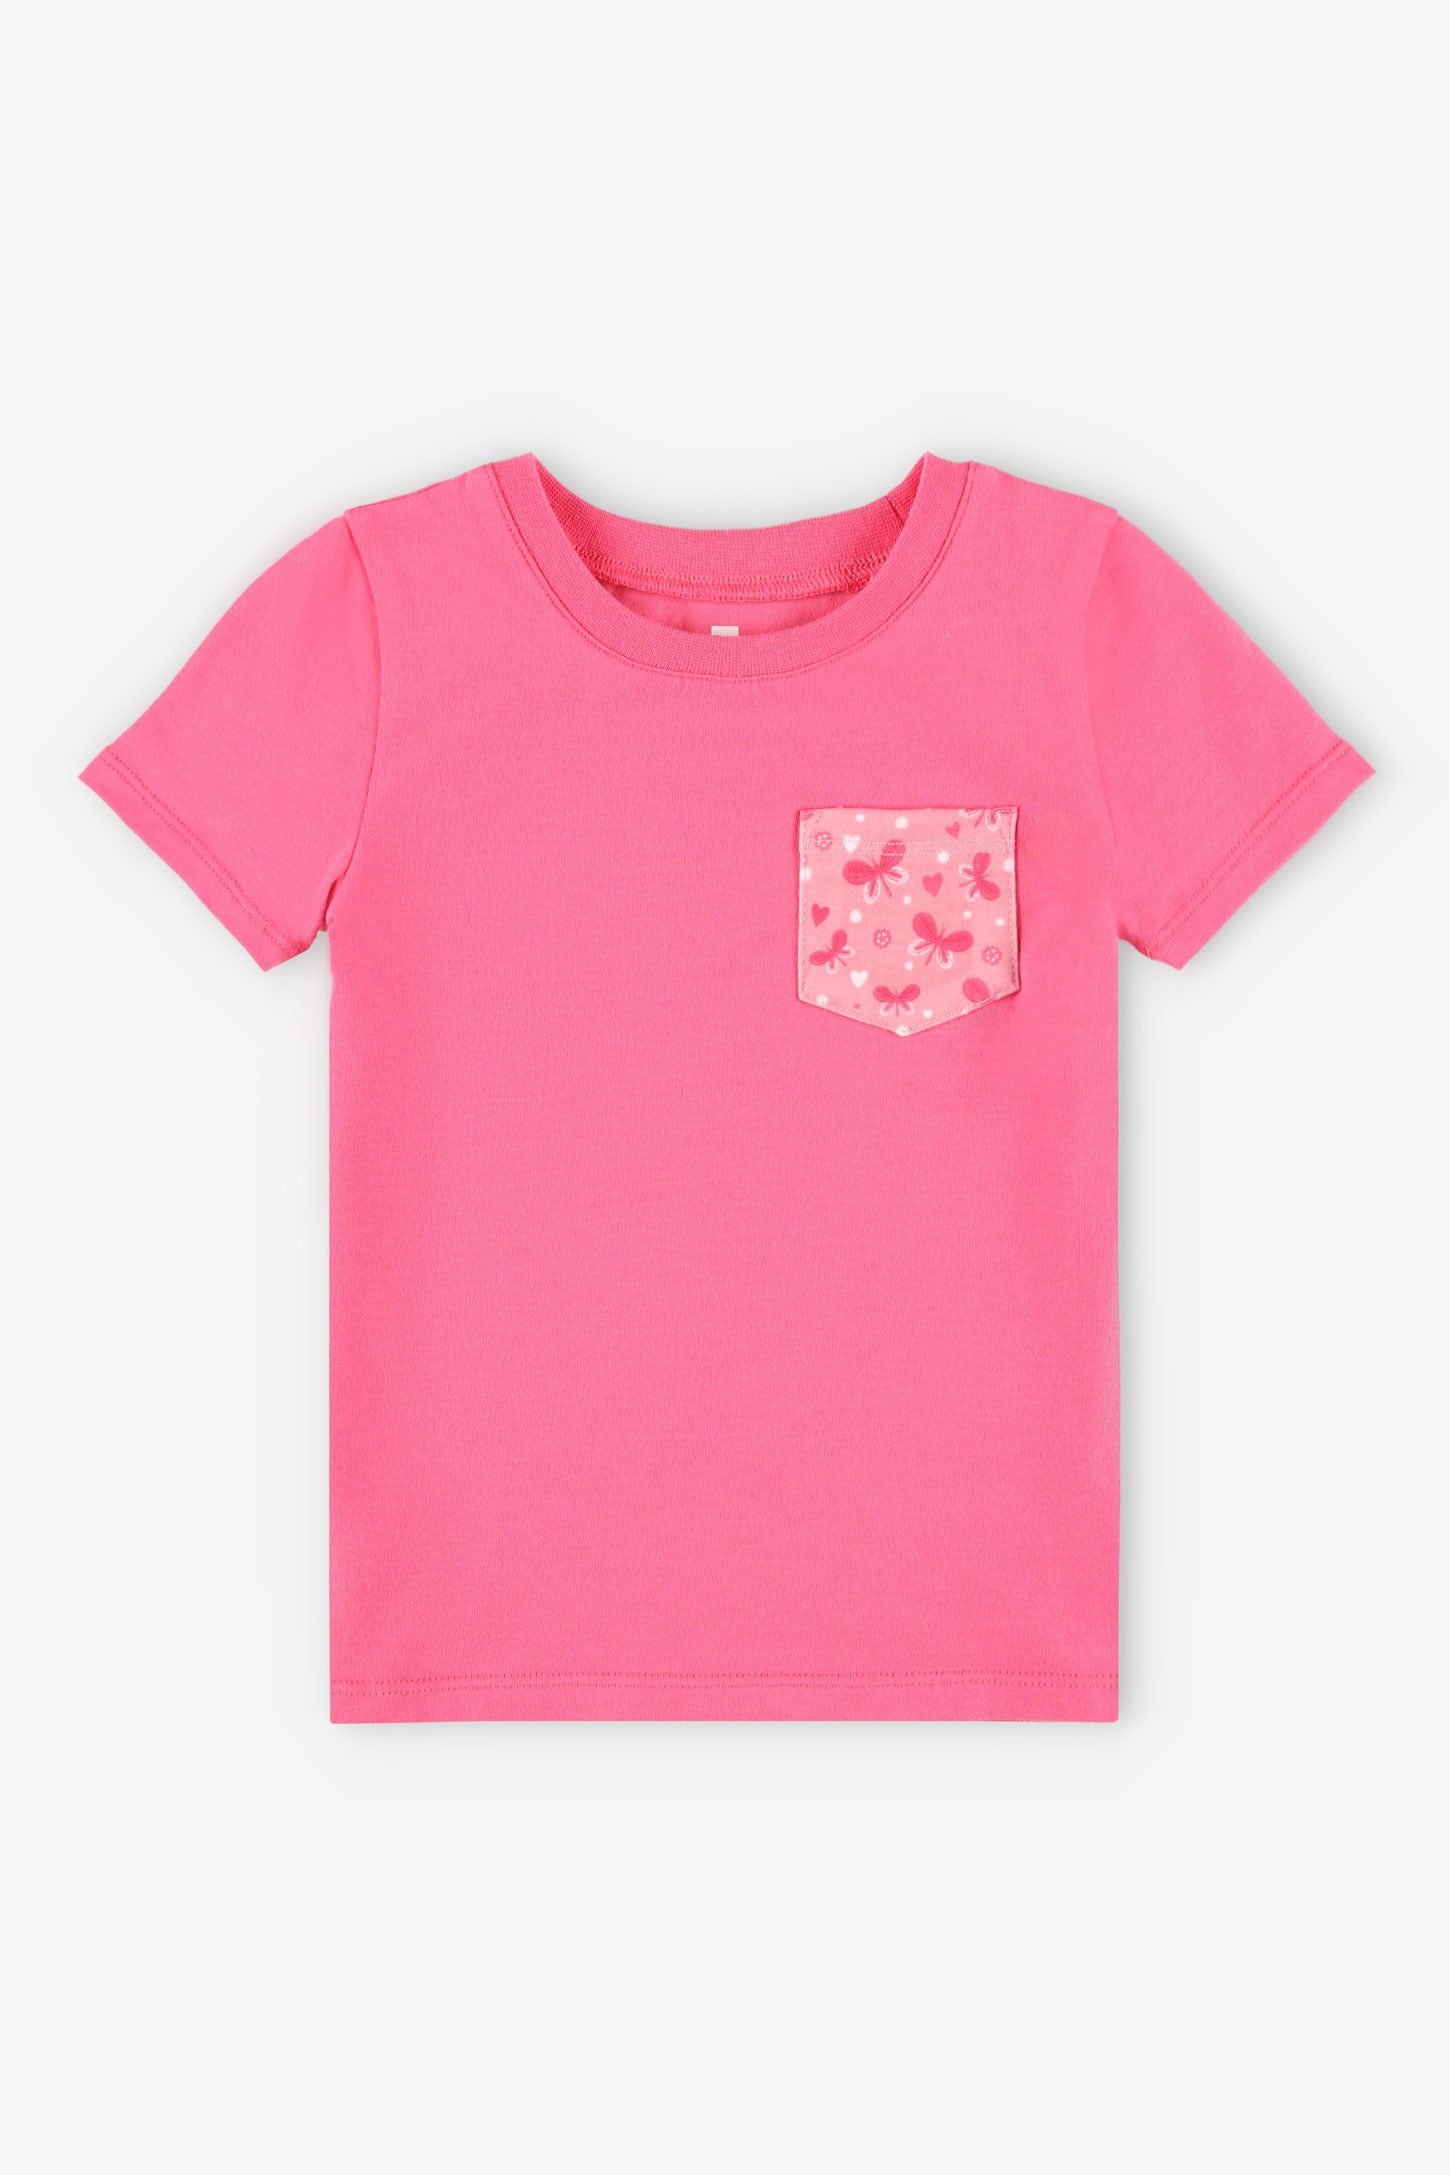 Duos futés, T-shirt à poche, 2T-3T, 2/20$ - Bébé fille && ROSE FONCE